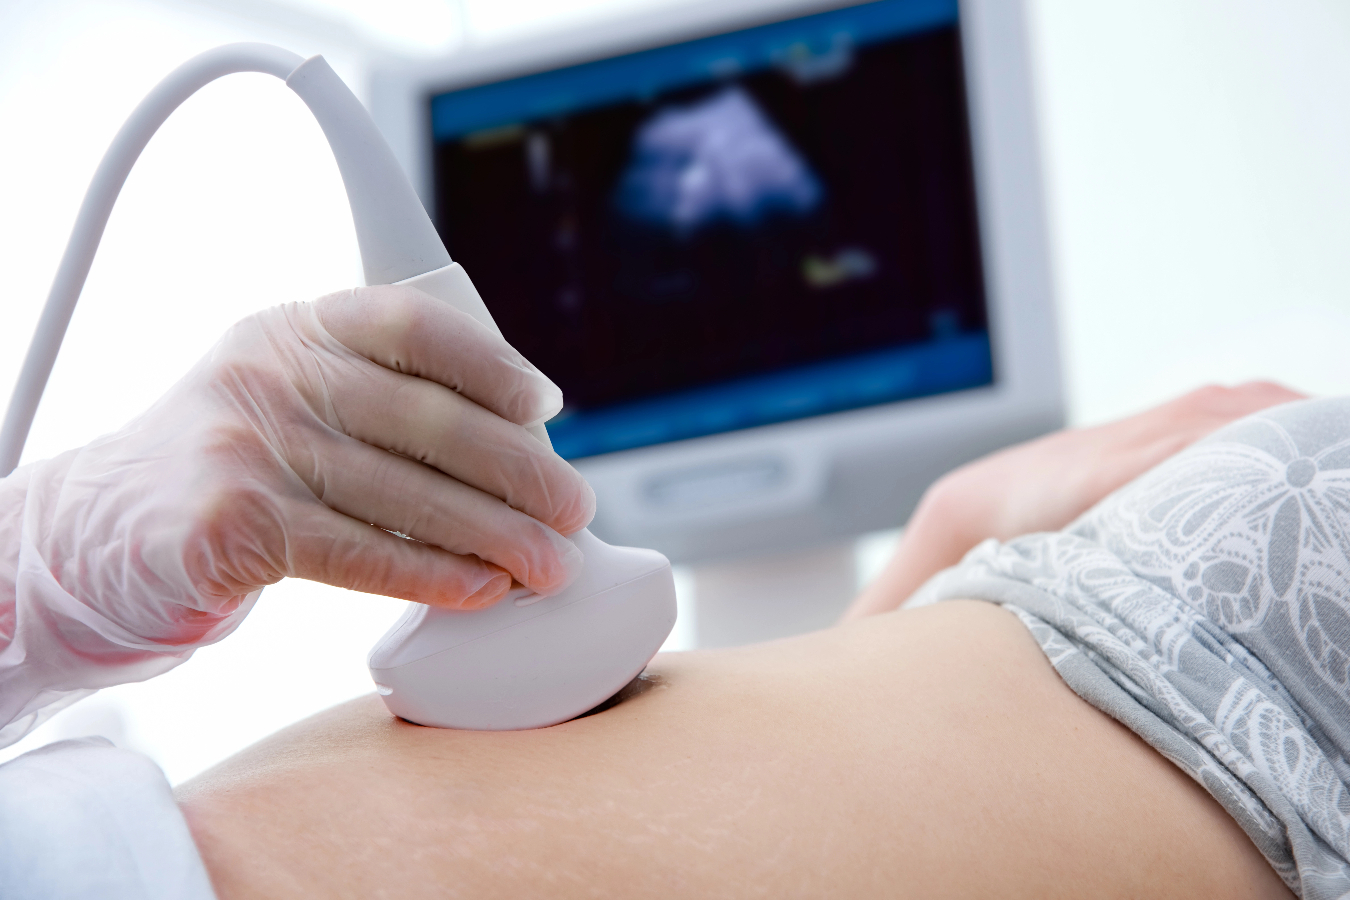 Programa visa realizar inseminação artificial gratuita; veja como participar